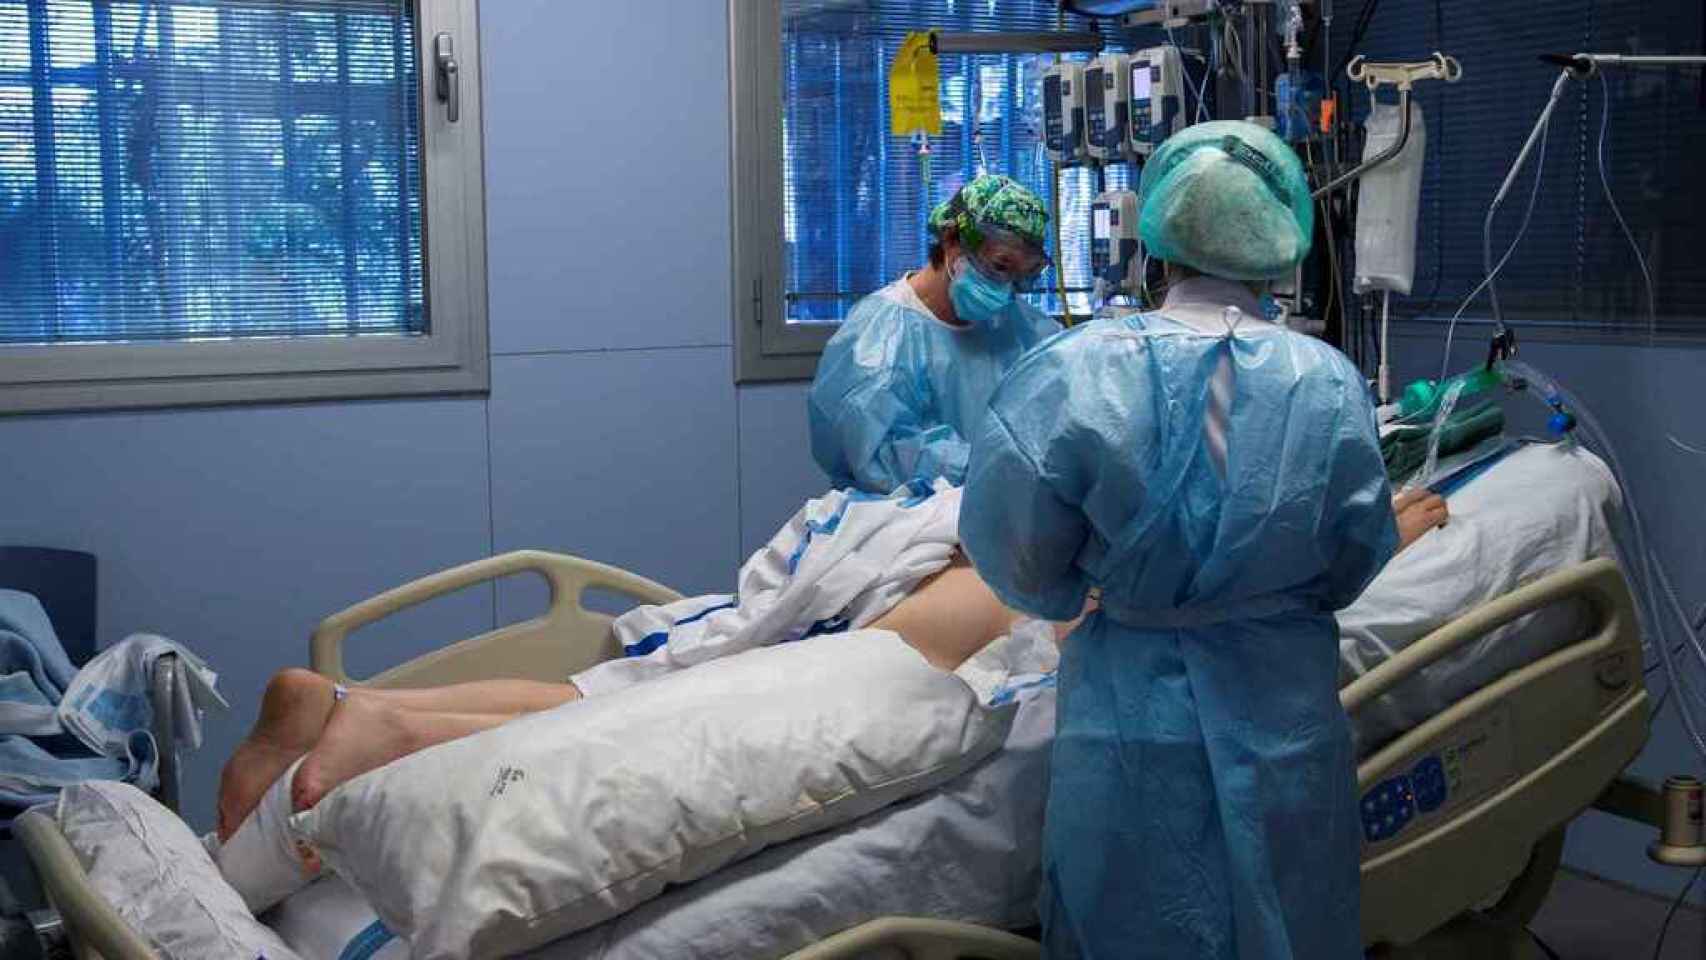 Dos sanitarios atienden a un paciente en la UCI de un hospital.